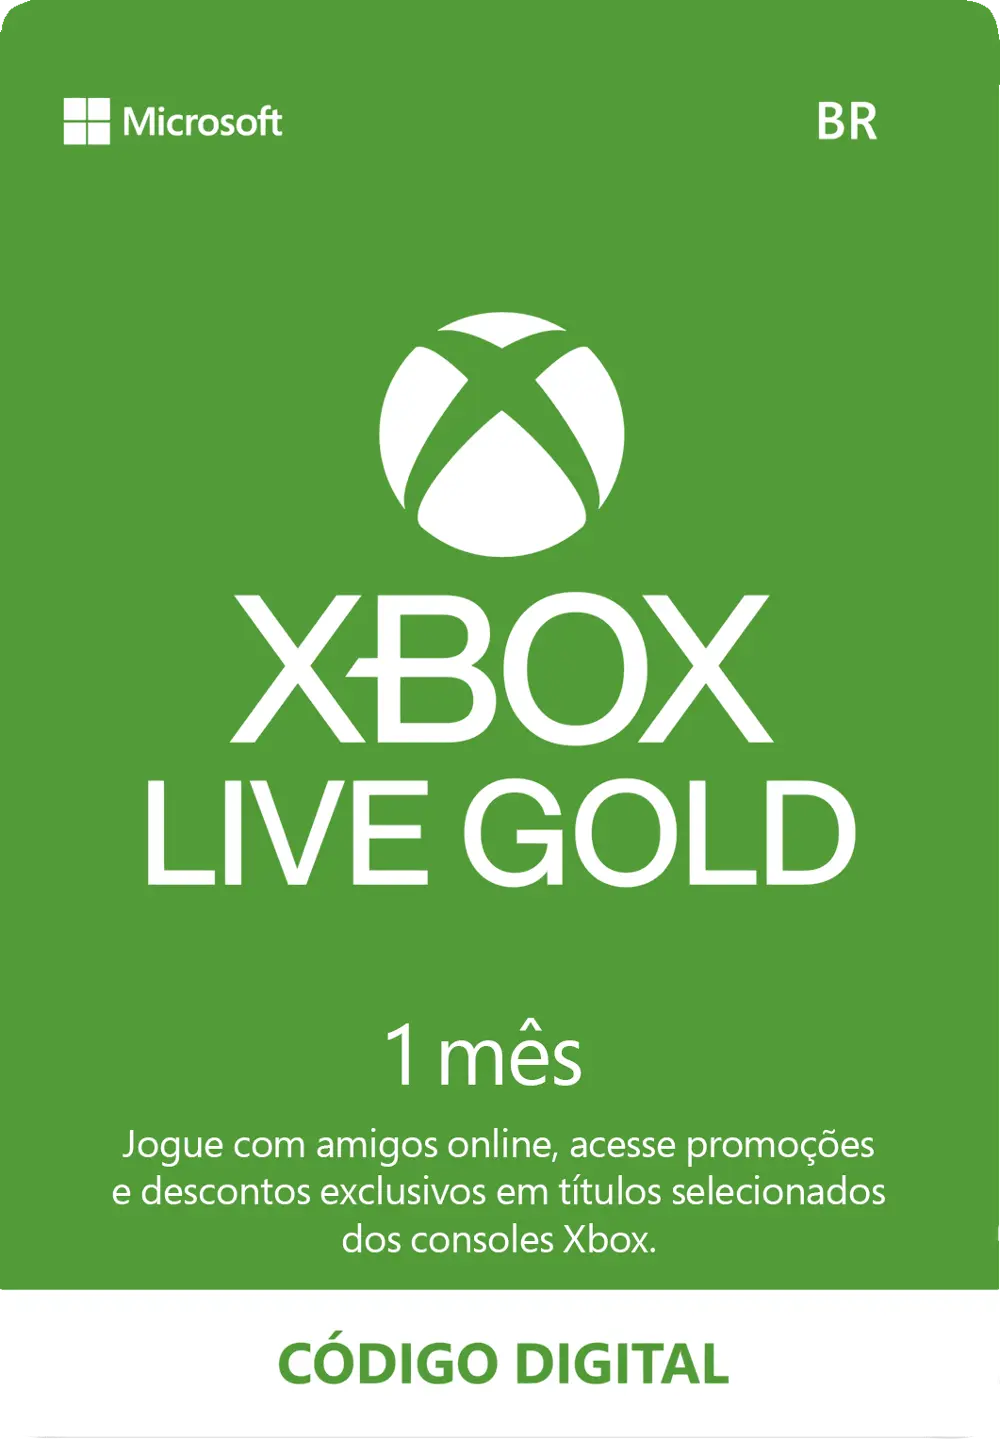 Comprar Cartão Xbox Live Gold - Assinatura 1 Mês